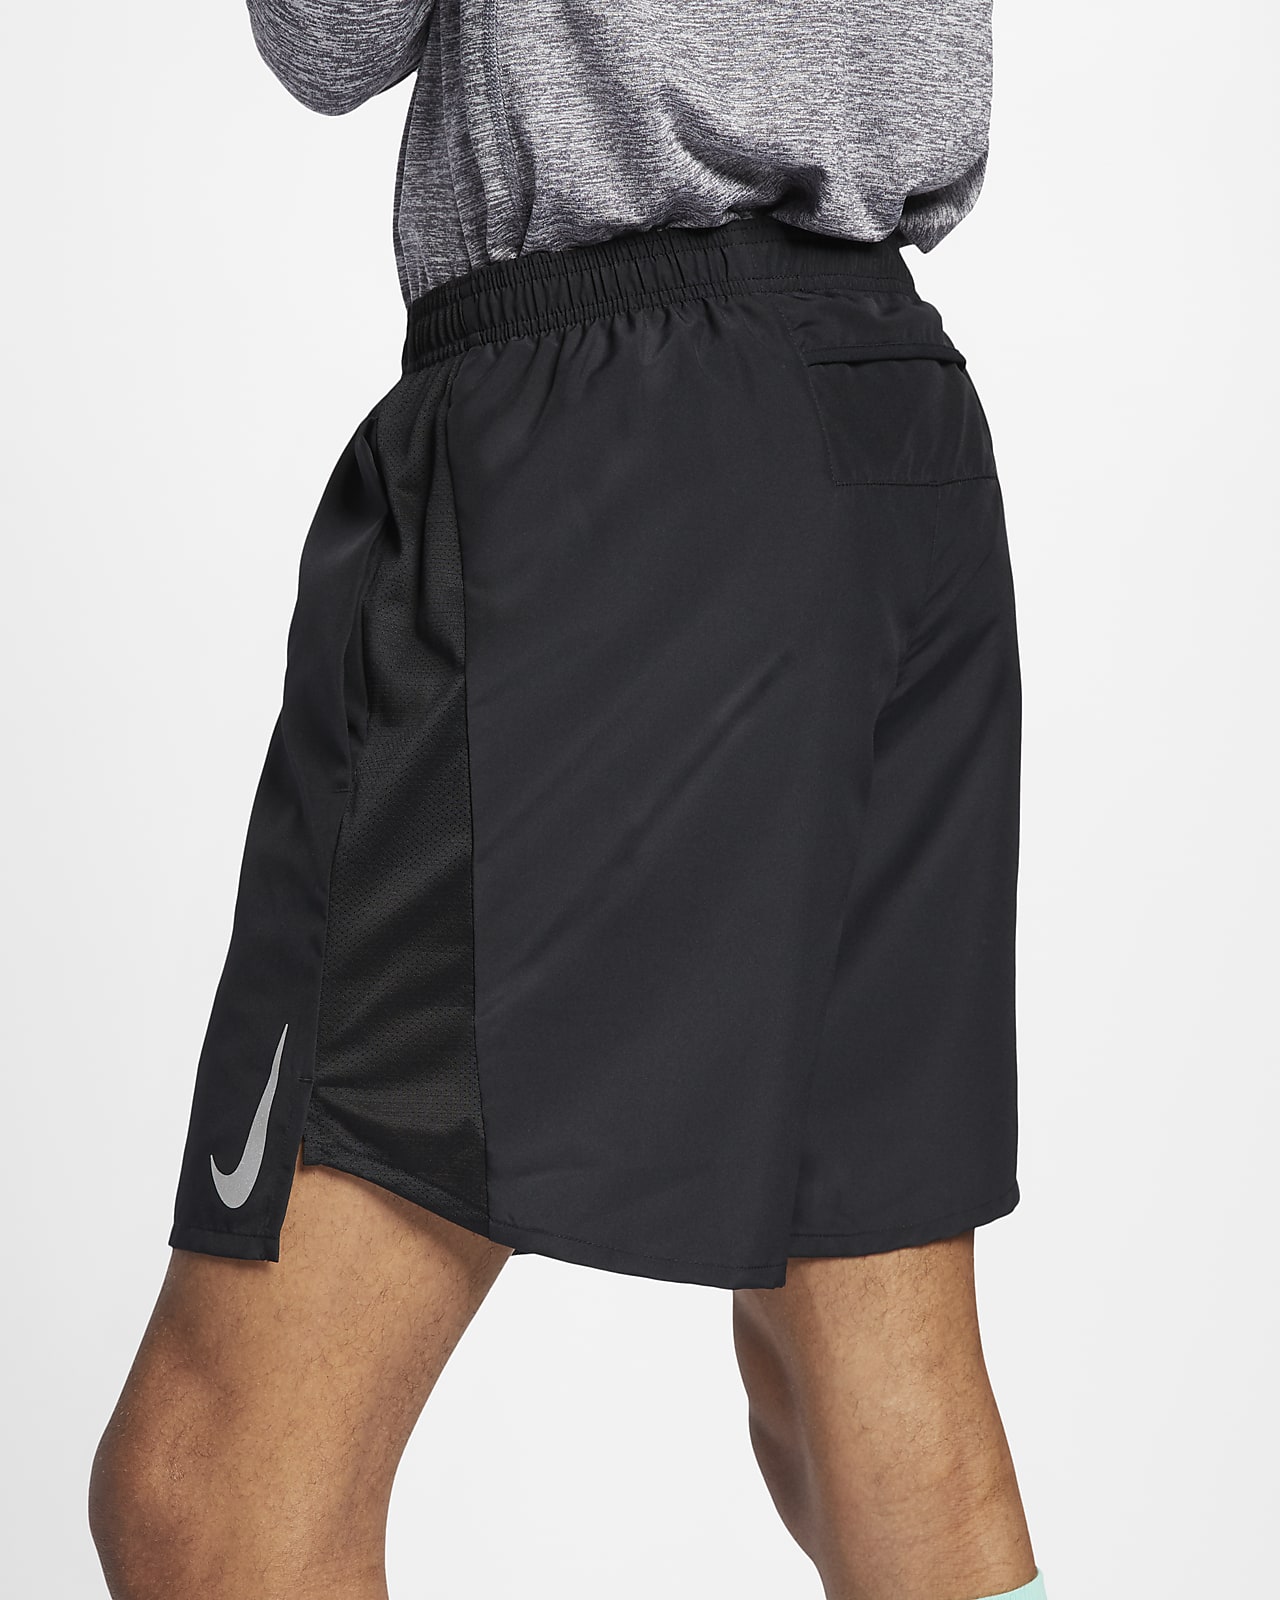 lined running shorts